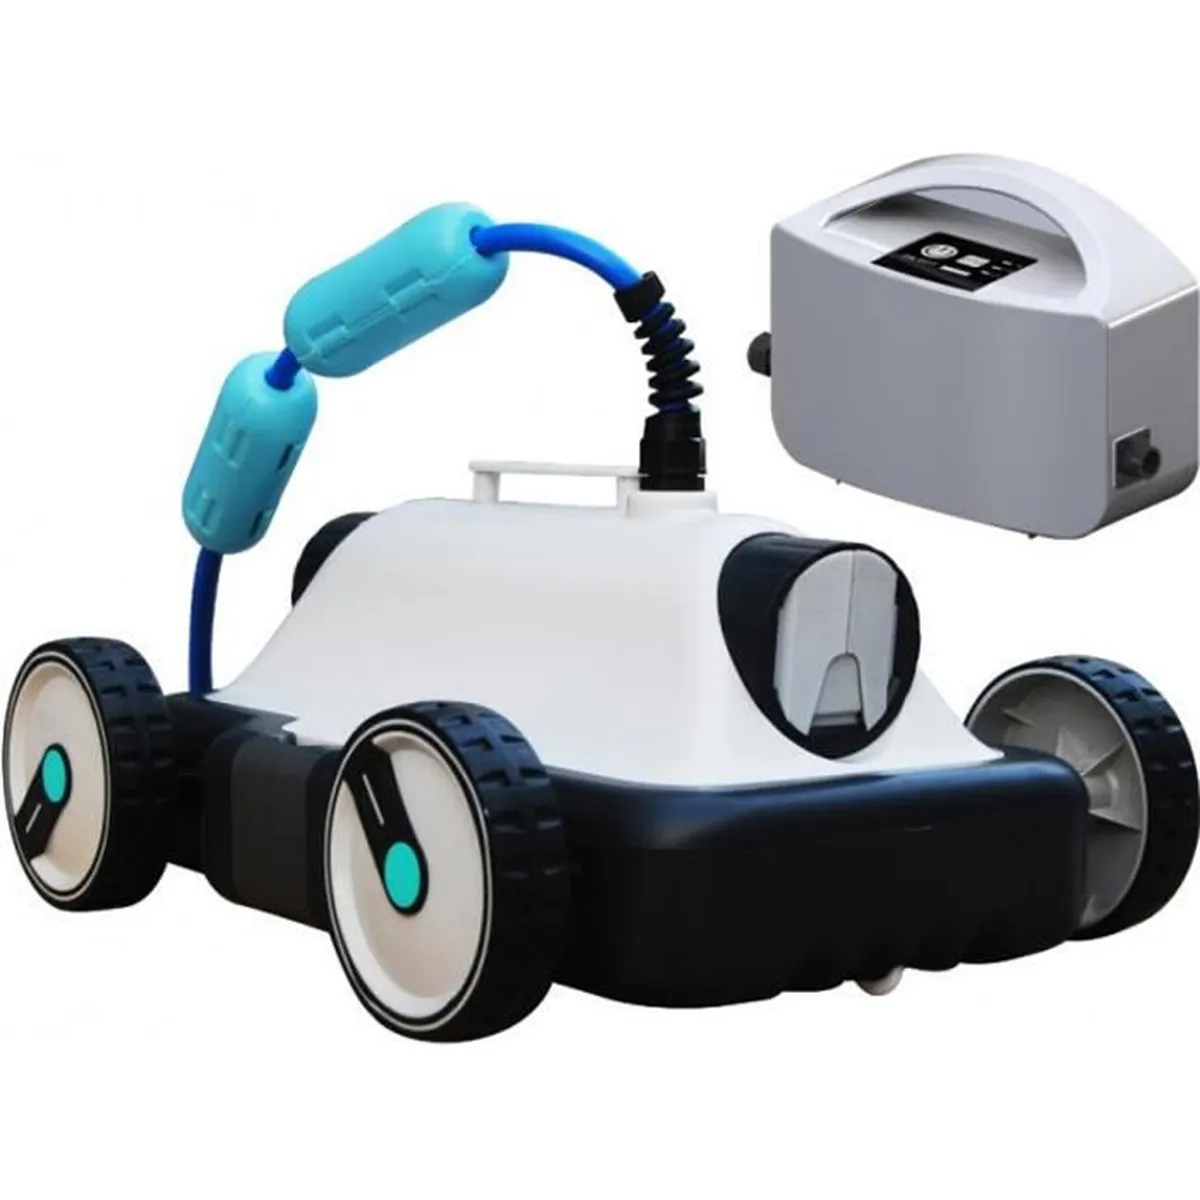 BESTWAY Robot aspirateur électrique MIA